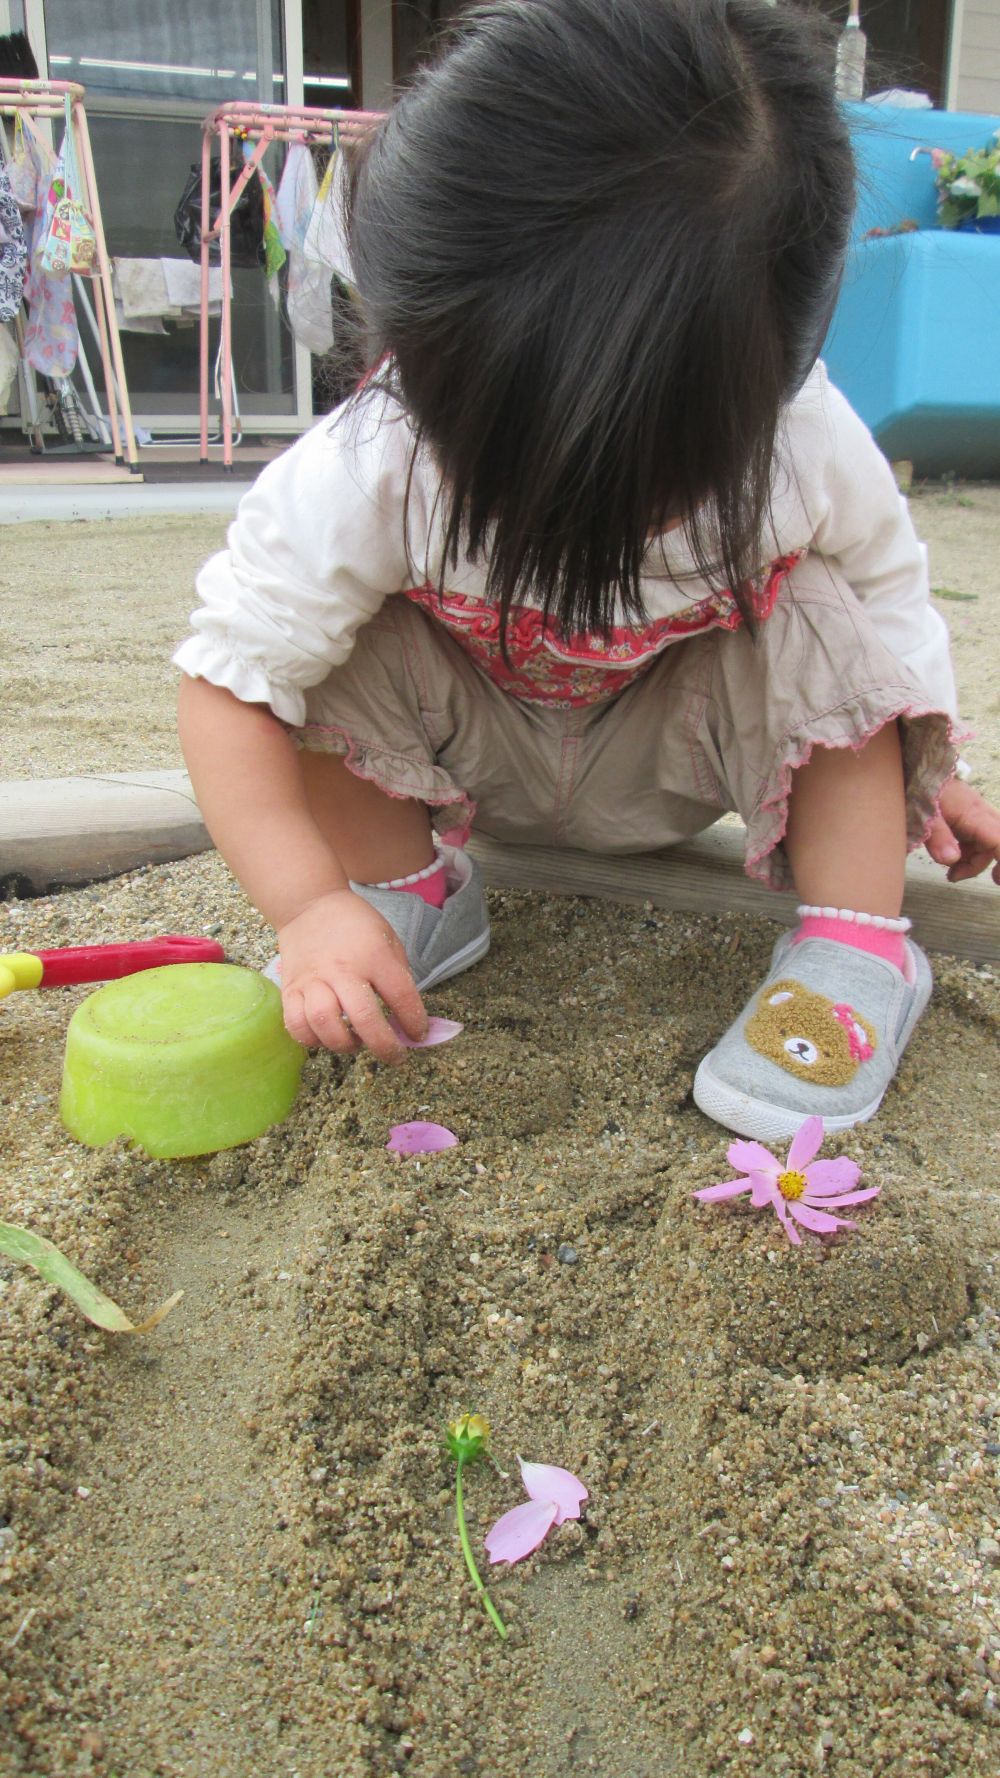 園庭に咲いたコスモス

ピンクでとってもキレイ♪
Sちゃんは、さっそく砂をお椀に入れて、
ケーキの土台を作って・・・

